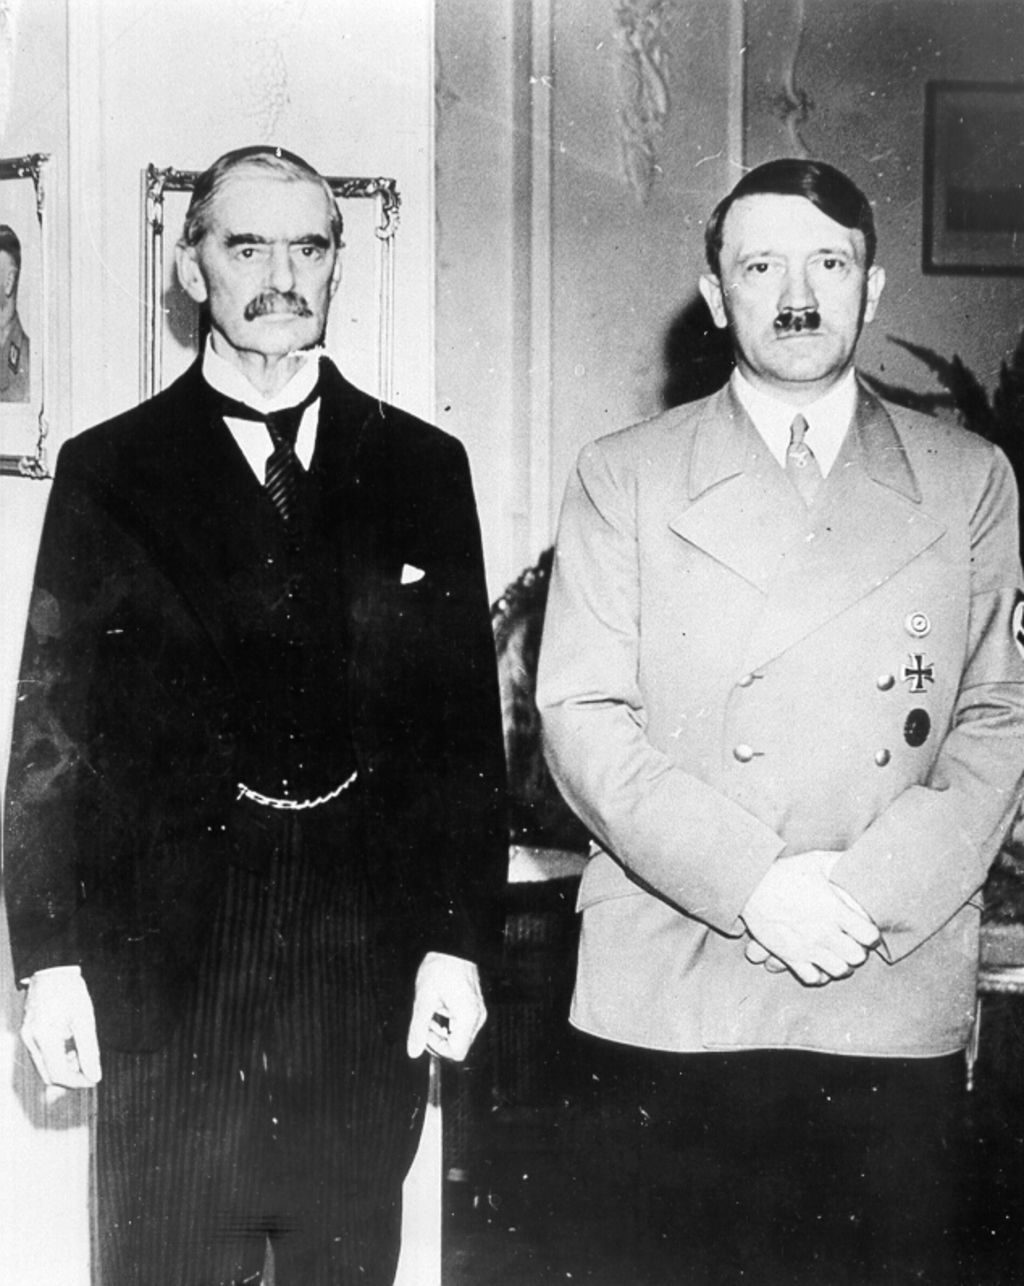 Foto: Chamberlain, Arthur Neville (l.) mit Adolf Hitler, 1938